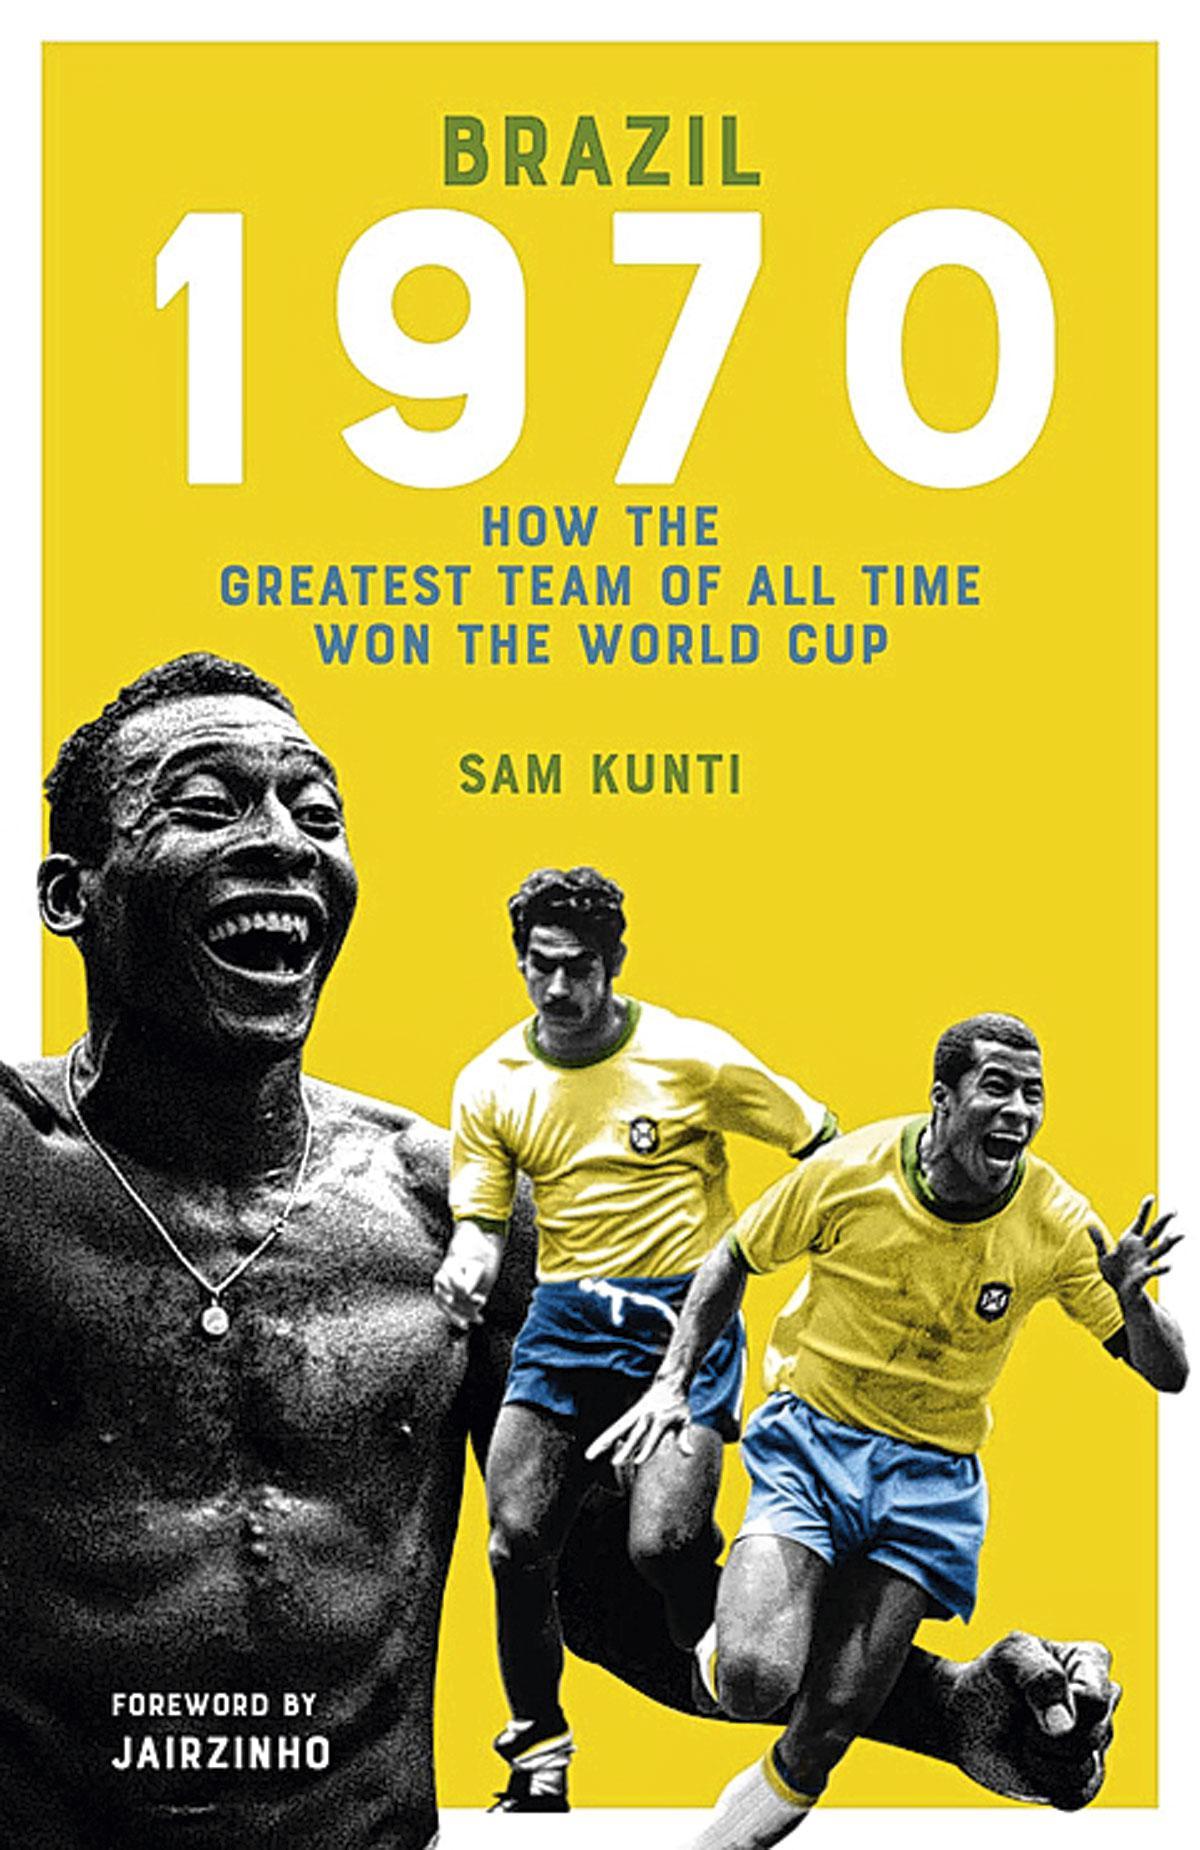 Deze tekst is een hoofdstuk uit het boek ‘Brazil 1970. How the greatest team of all time won the world cup’ van Sam Kunti, uitgegeven door Pitch Publishing